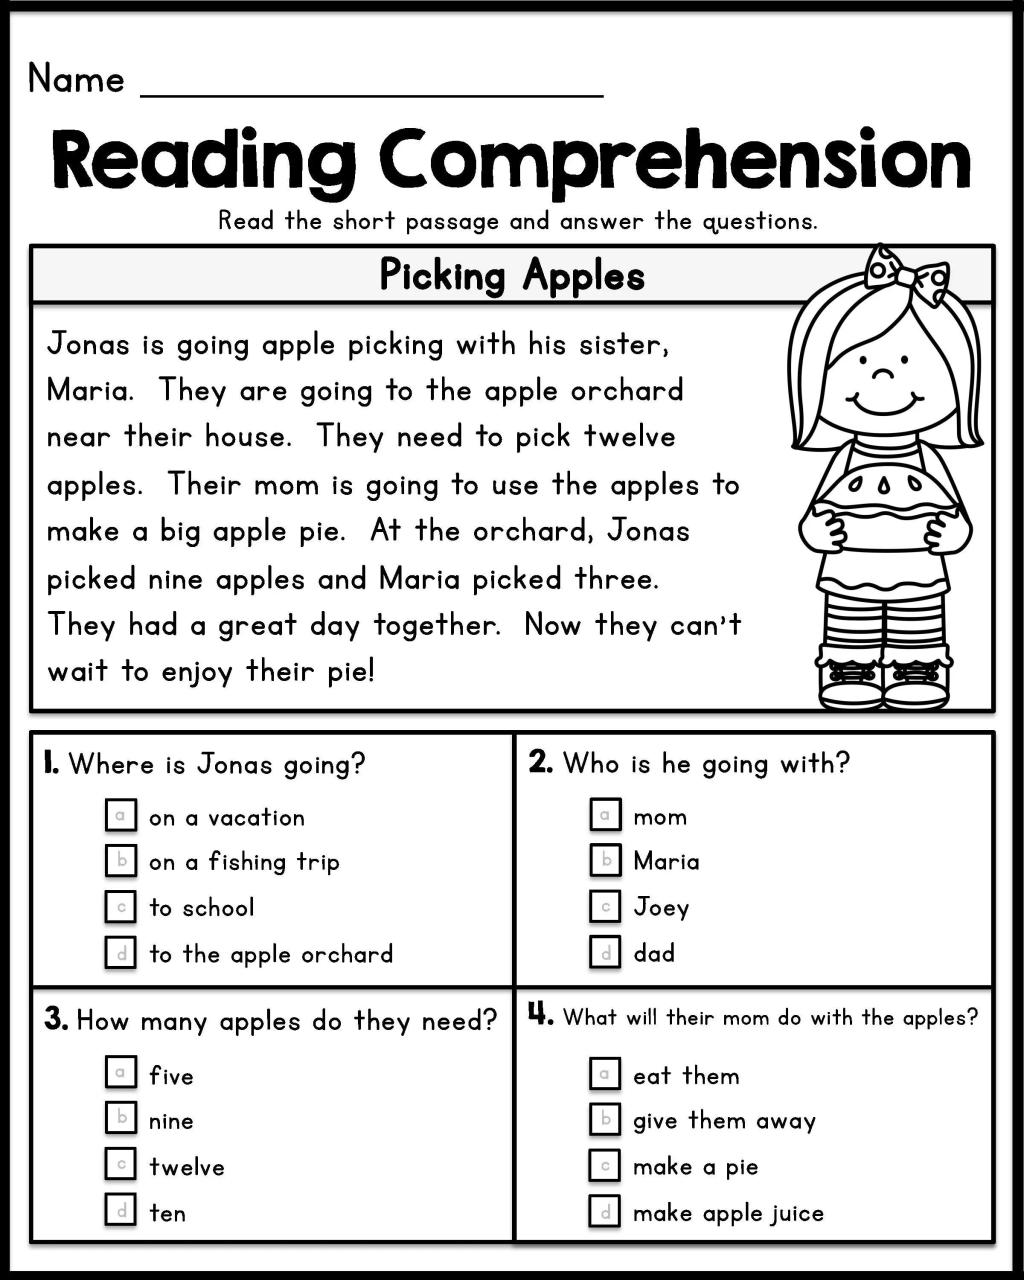 Reading Comprehension Worksheets For 1St Graders